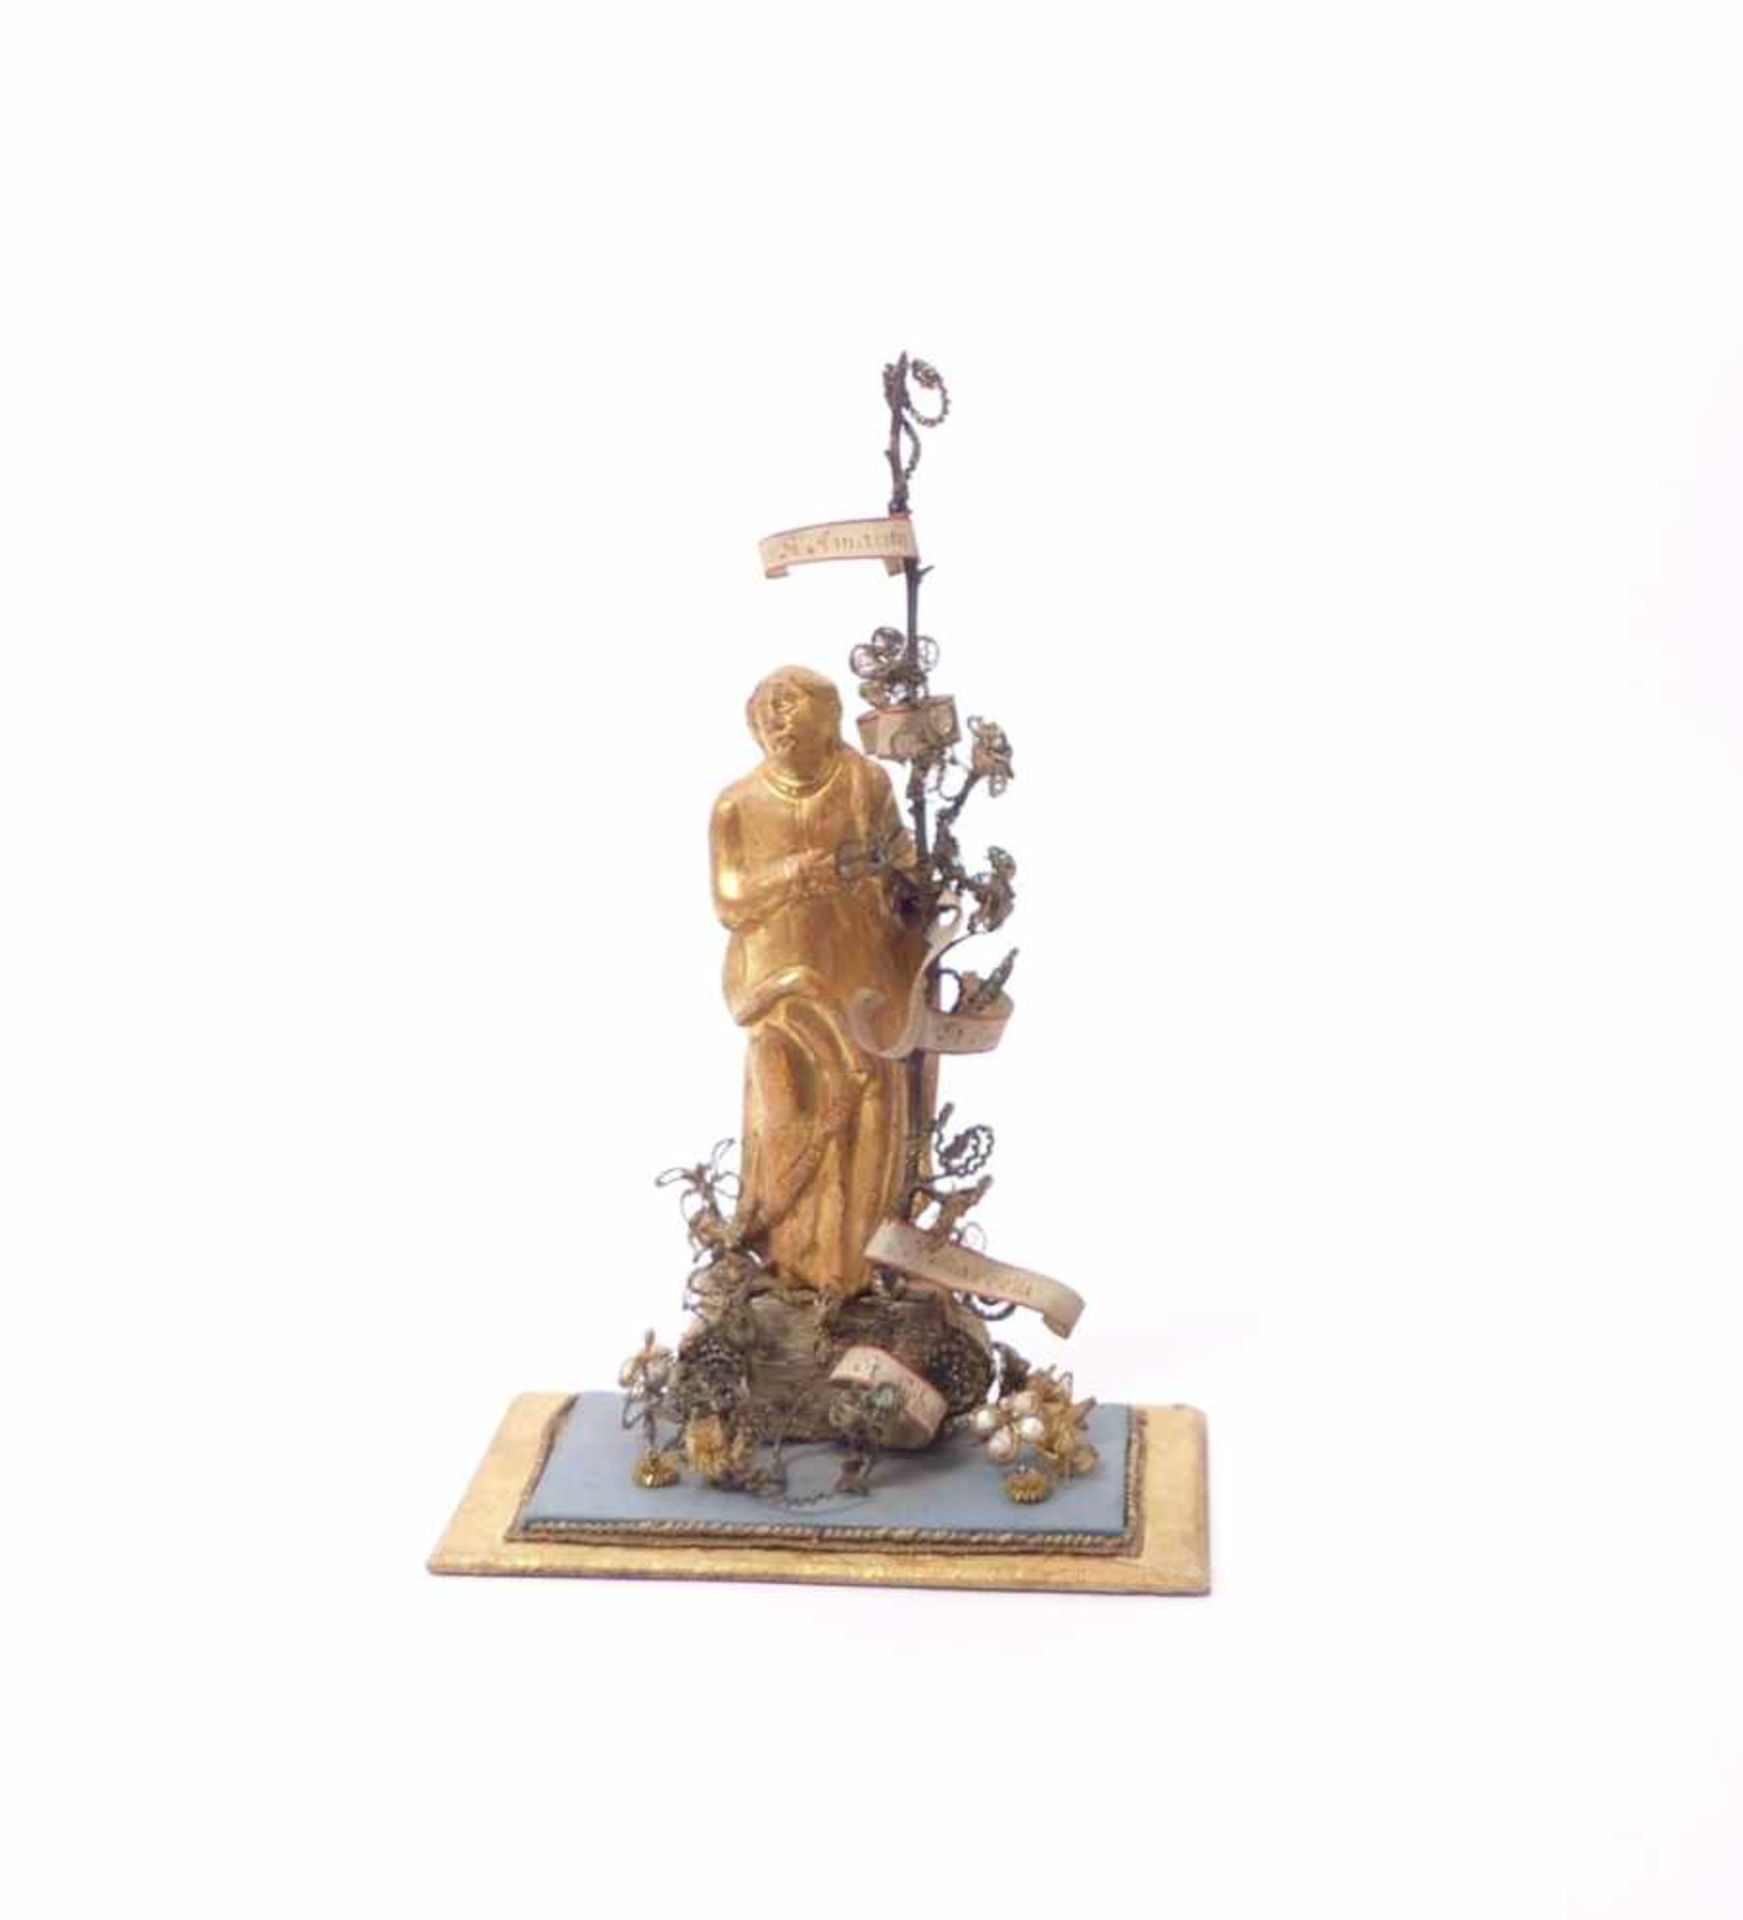 Klosterarbeit18. Jh.Auf Sockel stehender Heiliger mit Reliquienbaum, verziert mit Gold-